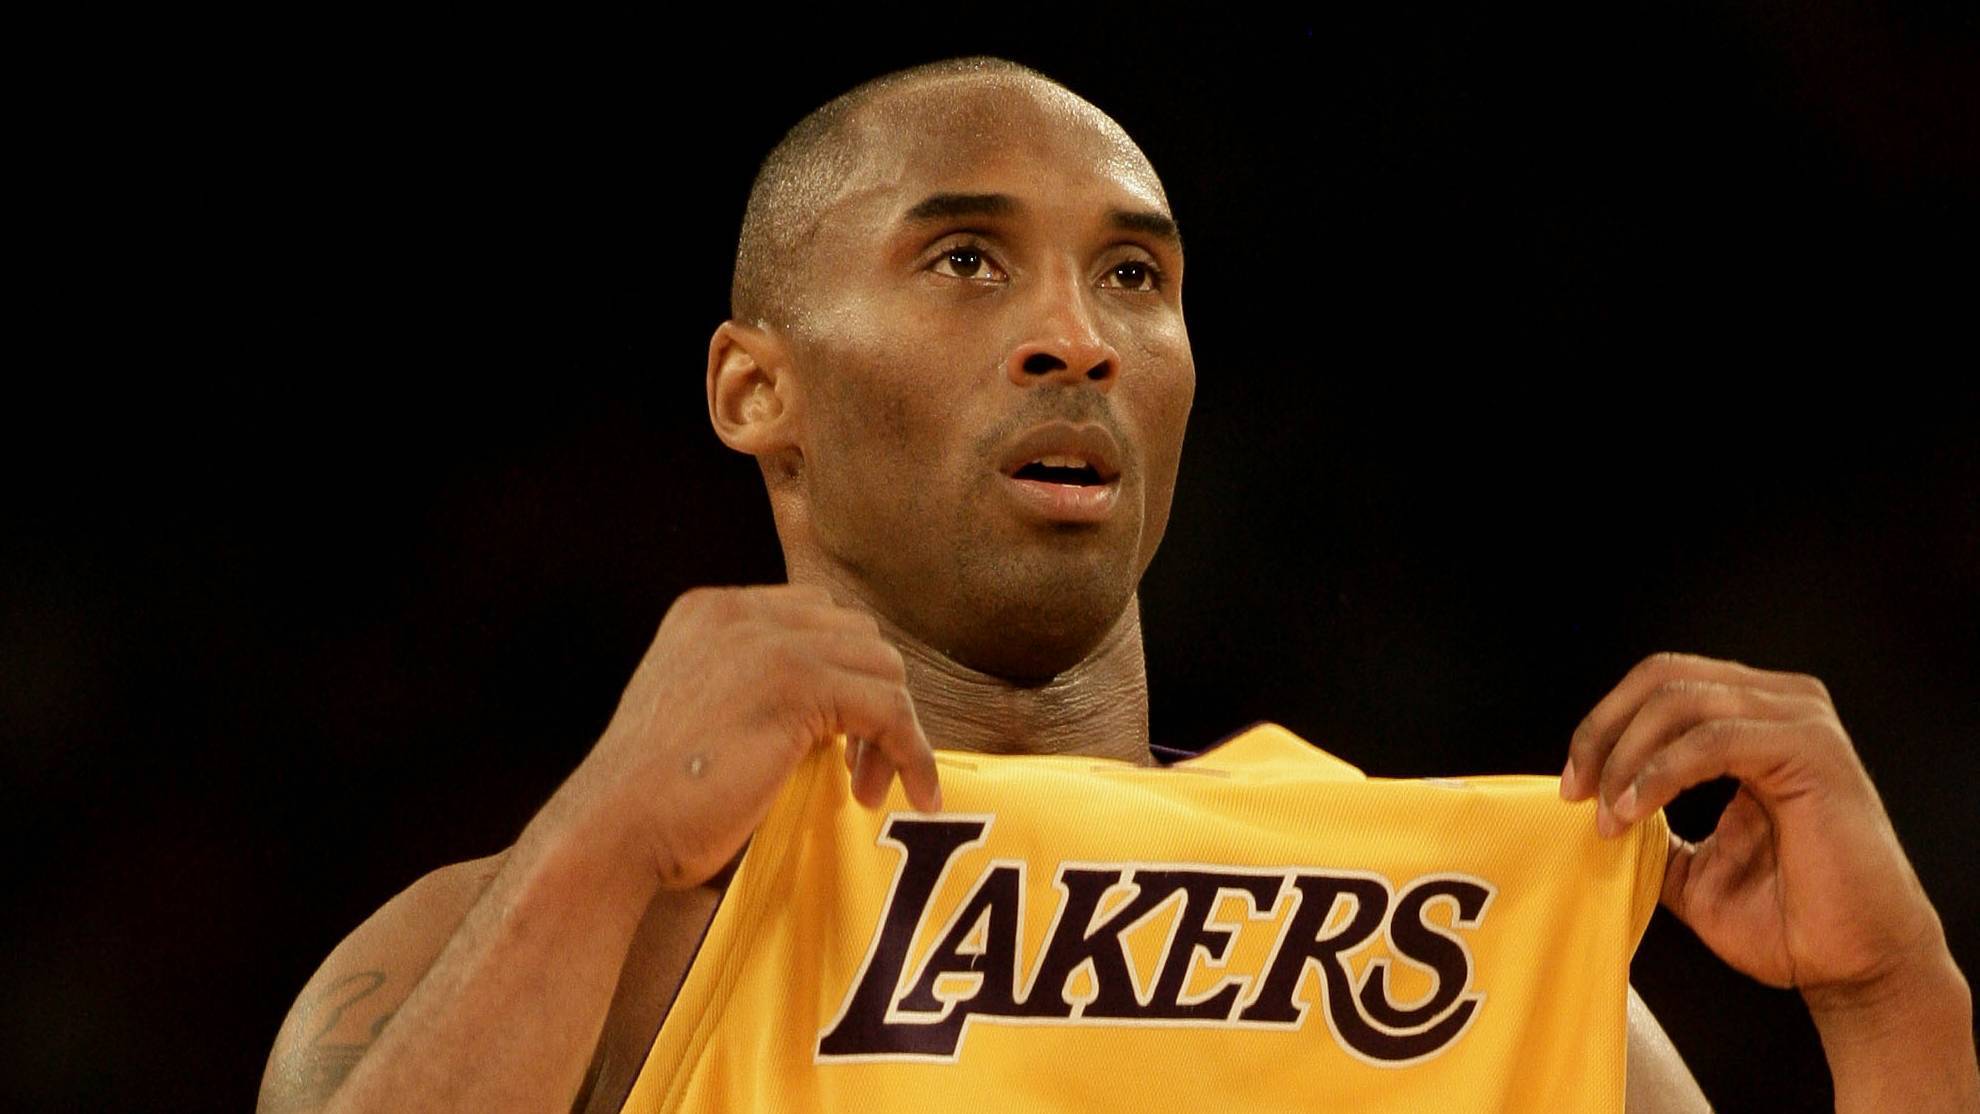 Kobe Bryant enseña el nombre de los Lakers en su camiseta